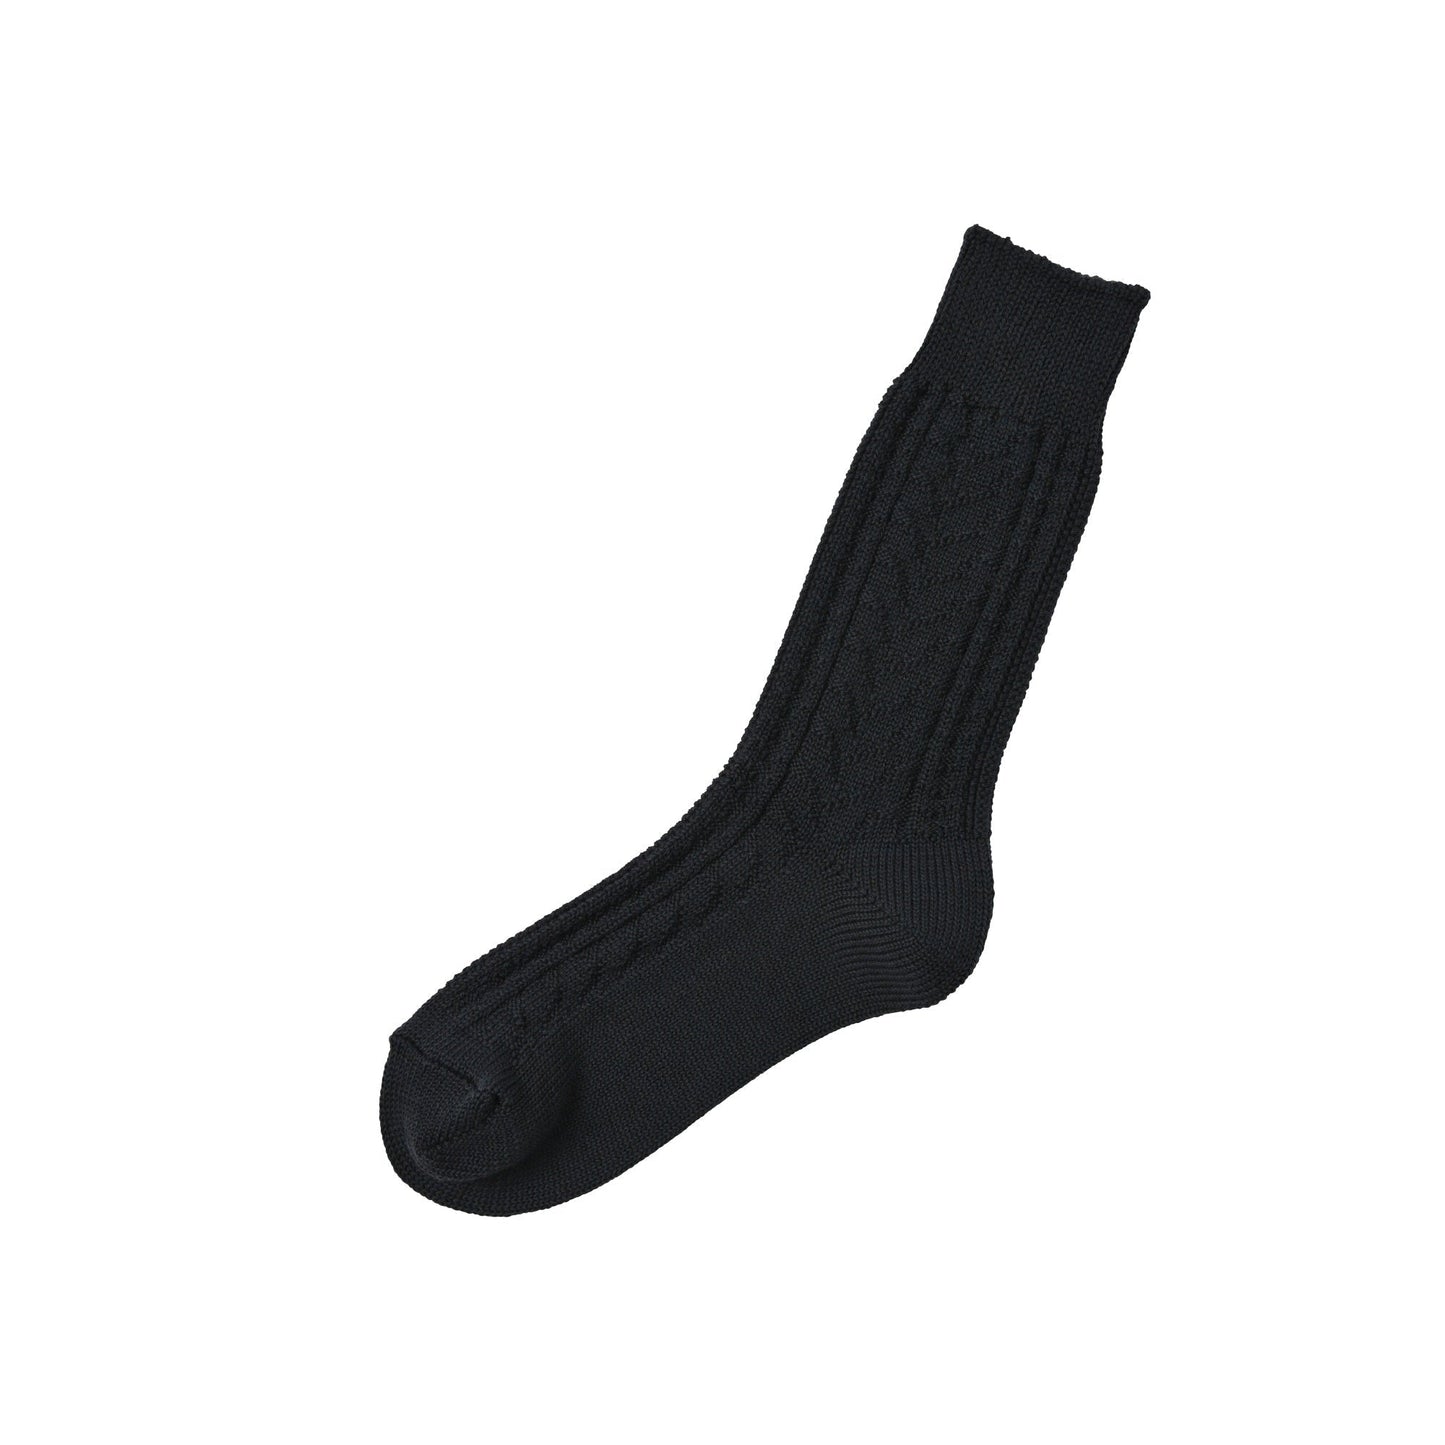 memeri socks made in japan